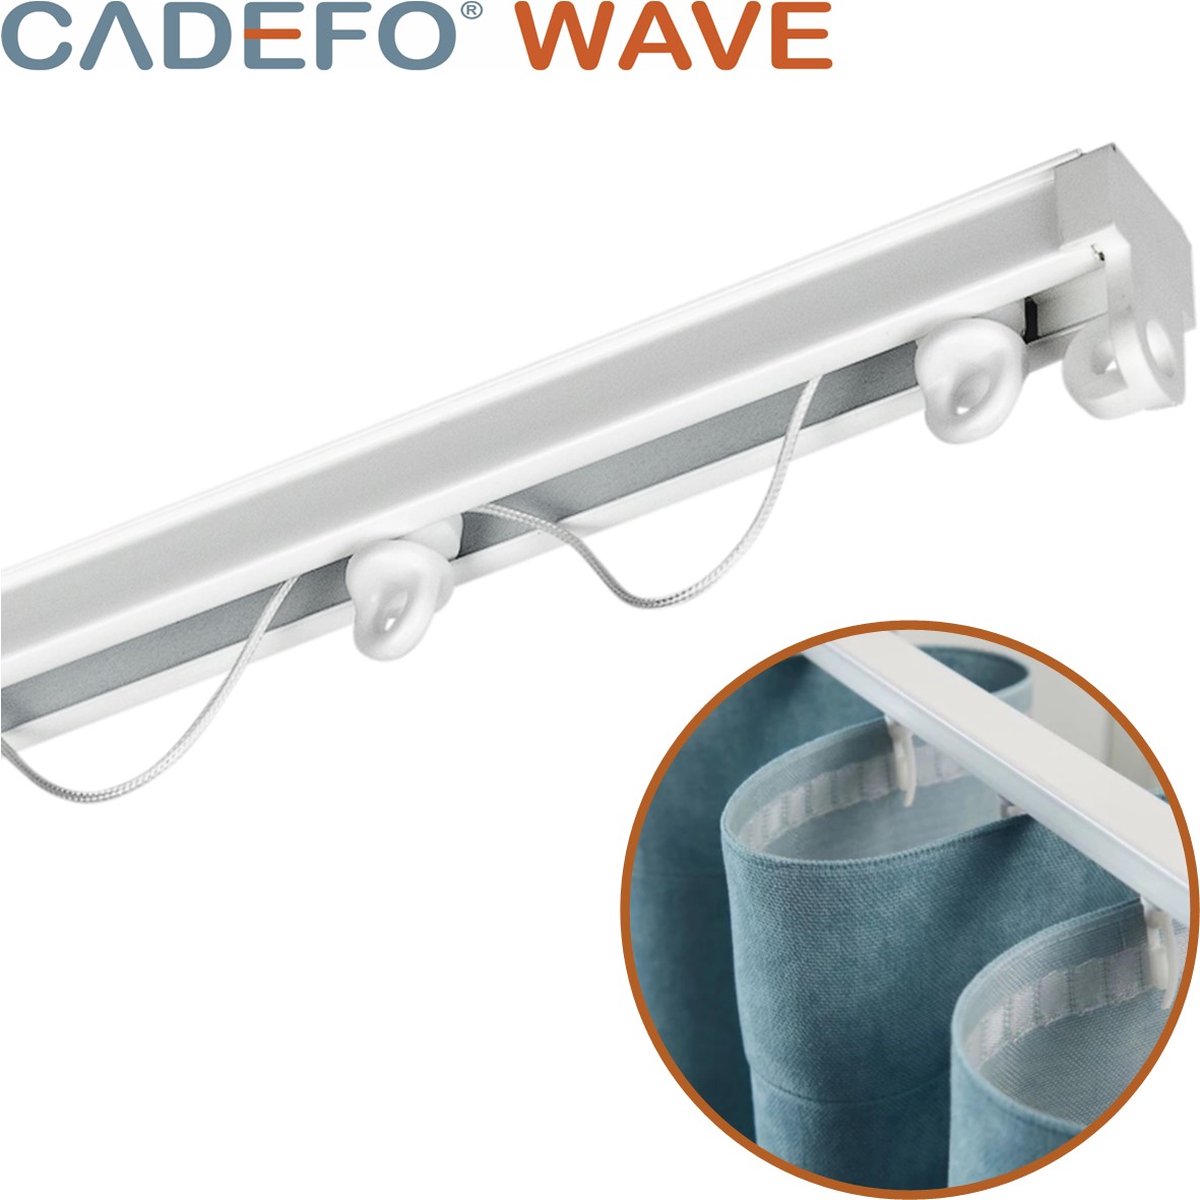 CADEFO WAVE (301 - 350 cm) Gordijnrails - Compleet op maat! - UIT 1 STUK - Leverbaar tot 6 meter - Plafondbevestiging - Lengte 344 cm